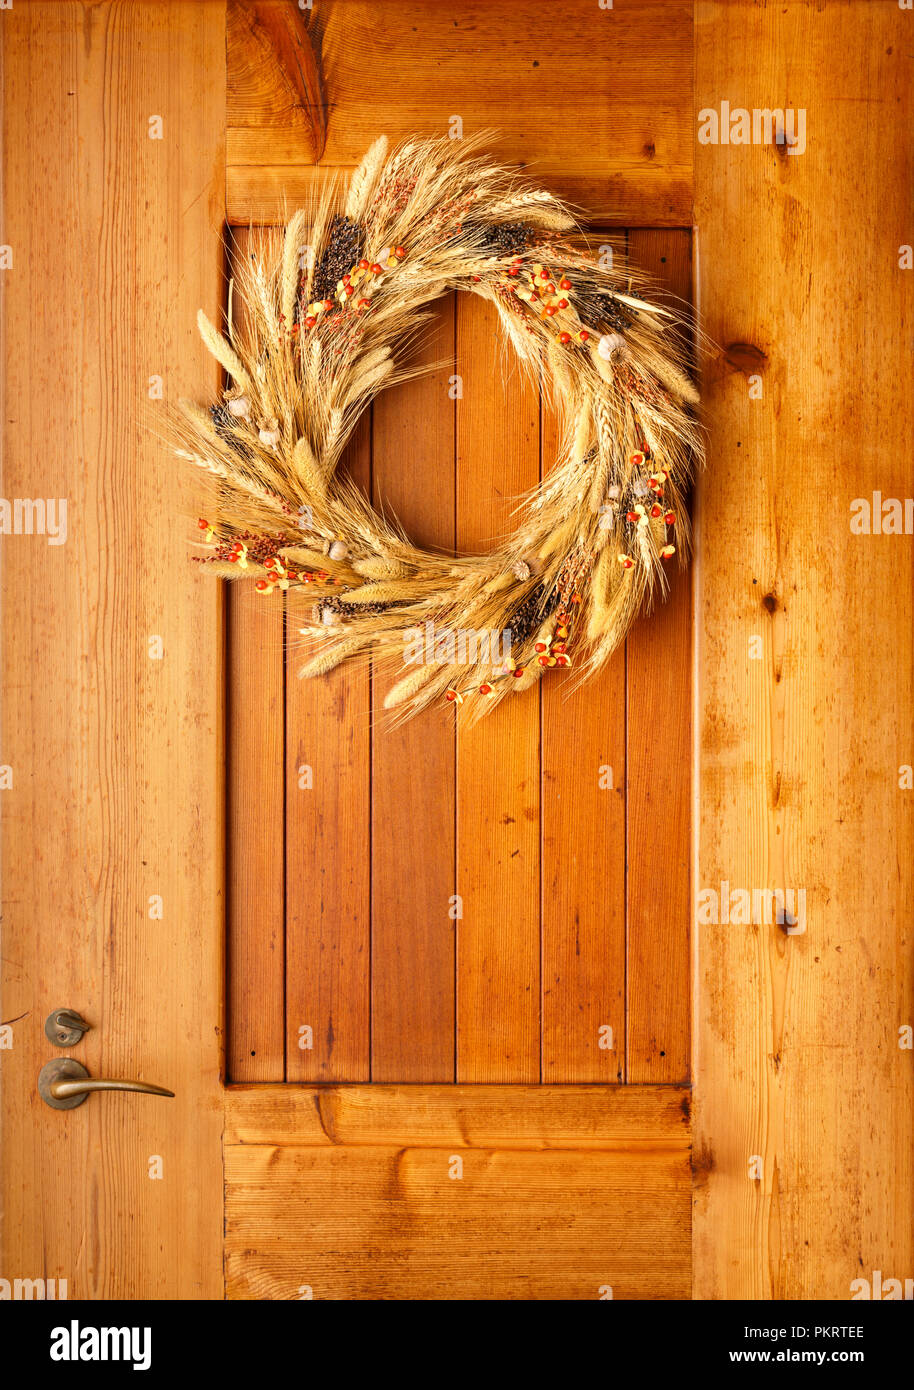 Chambre accueil porte d'automne automne décorations style pays Thanksgiving couronne rustique faite de matériaux botaniques naturels sur fond de bois Banque D'Images